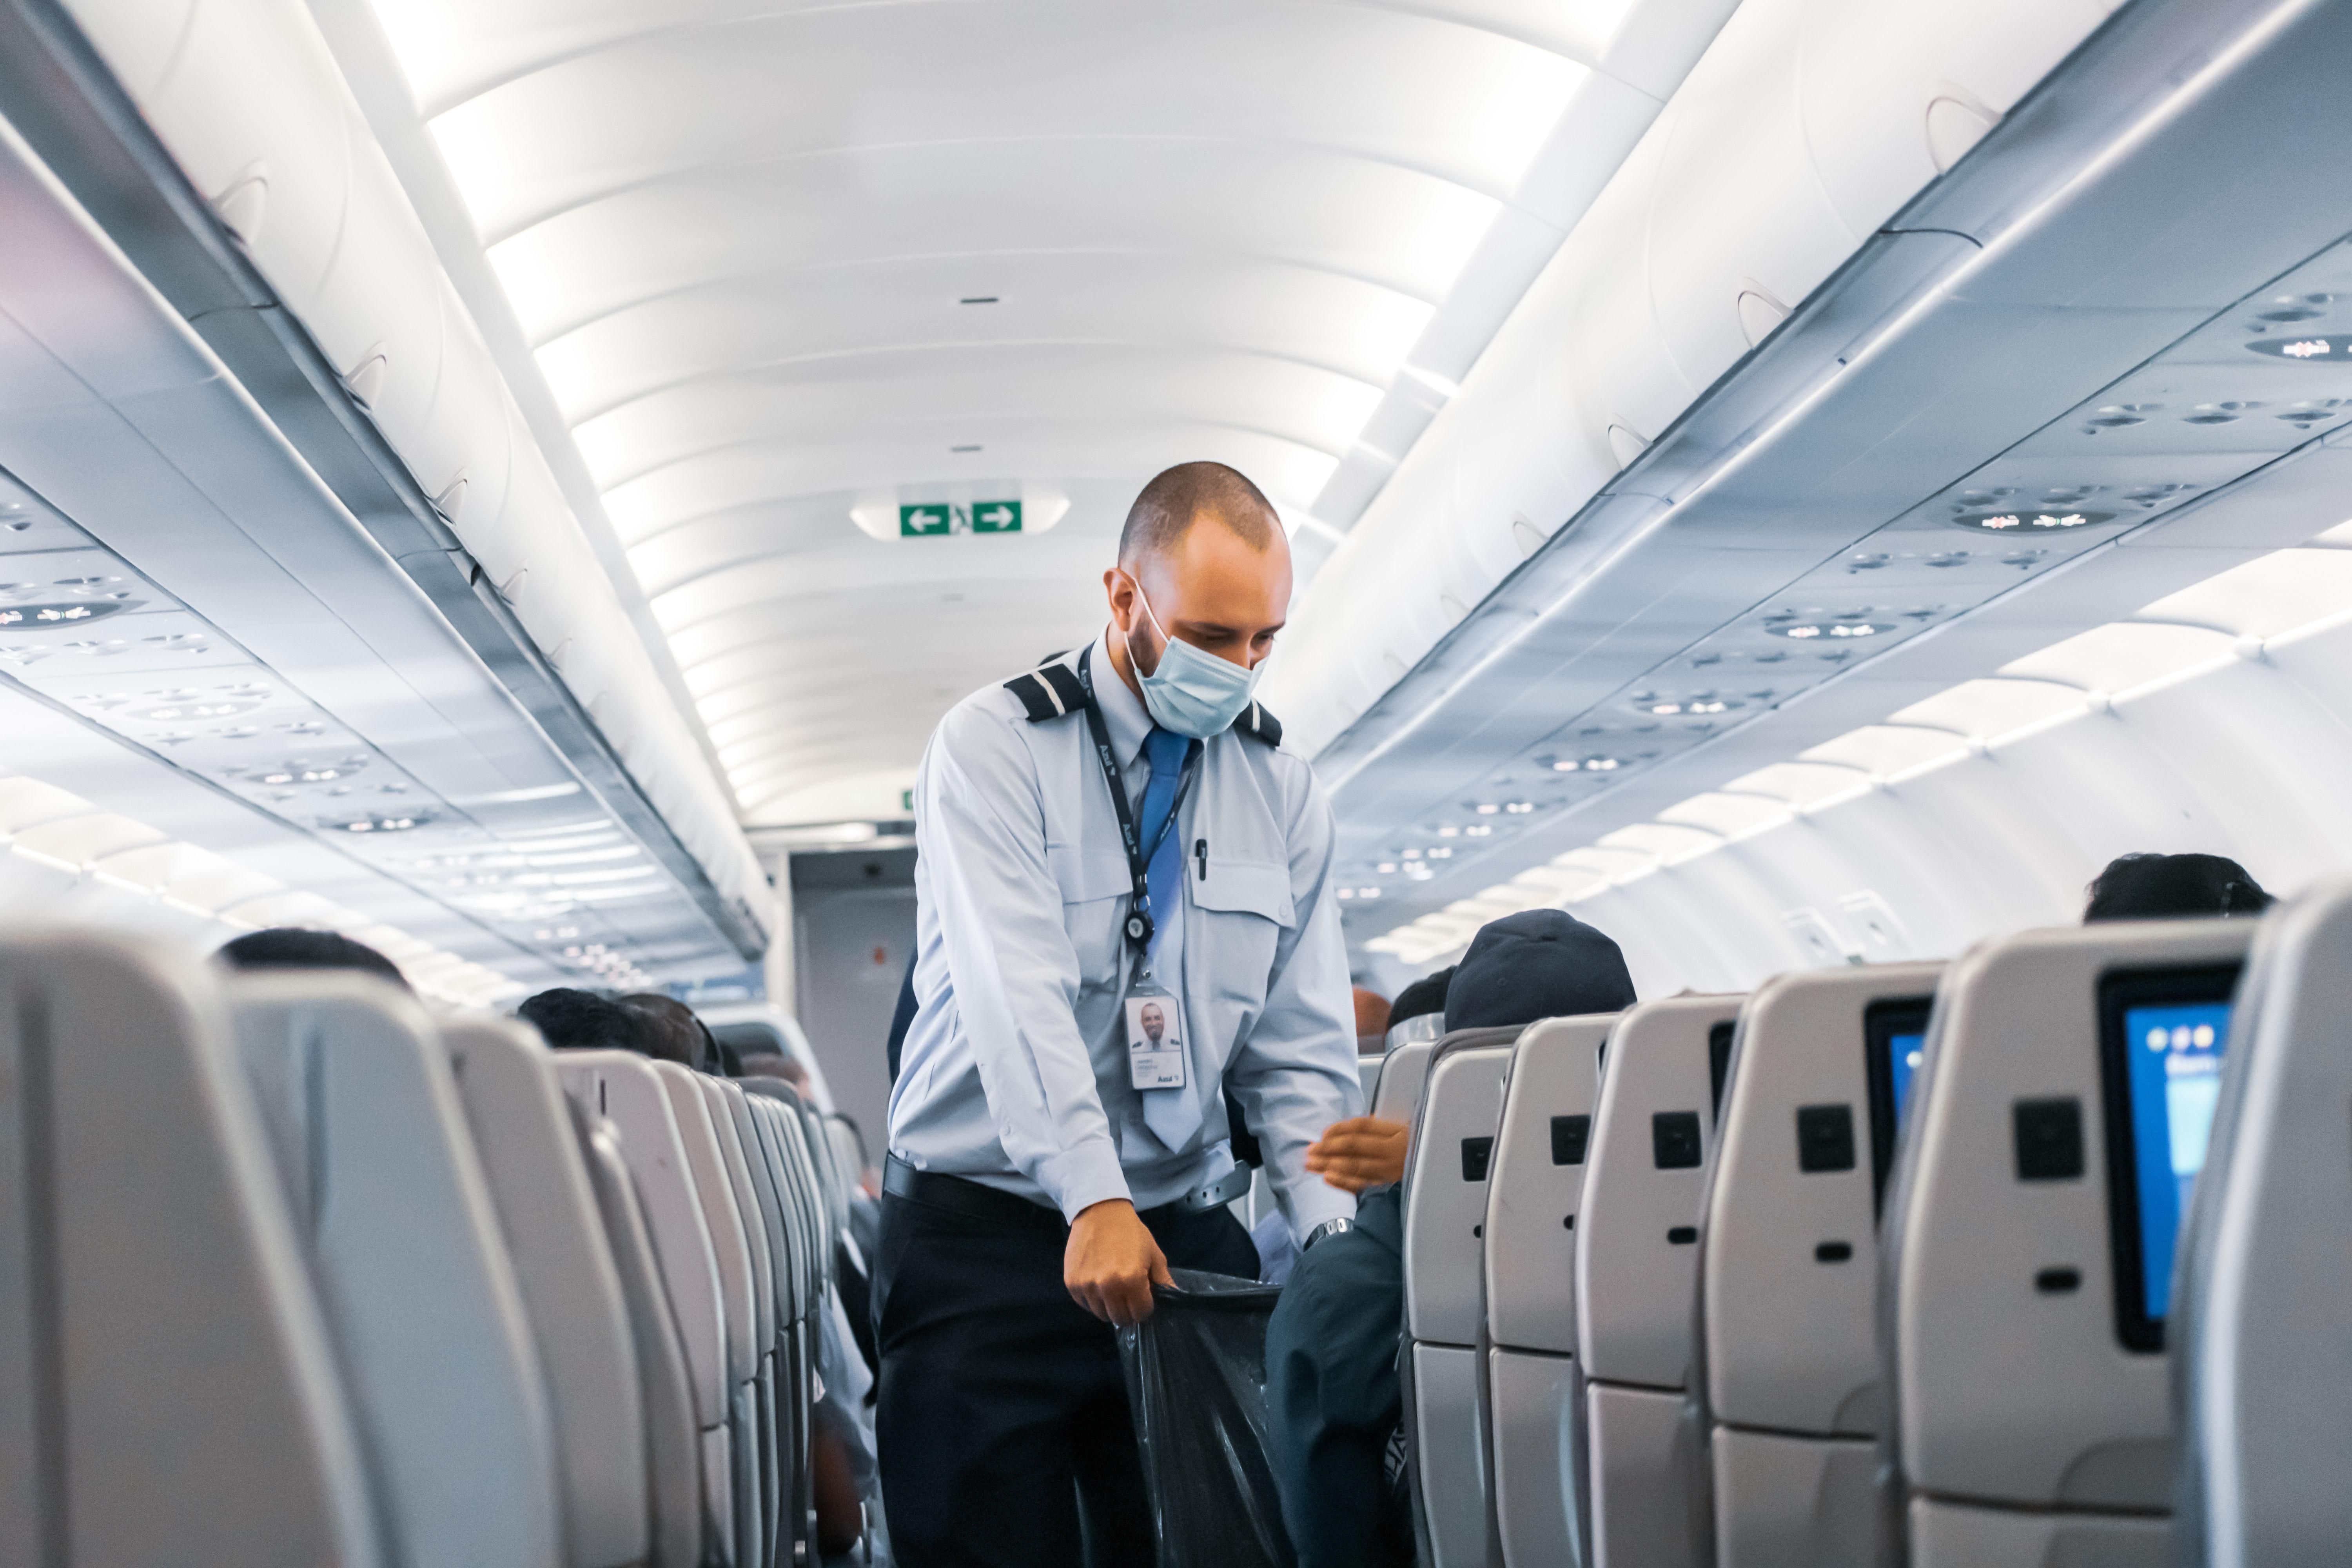 A Delta Air Lines légitársaság kék inges légi tisztje, munkavállalója kék maszkban járja a repülőt és gyűjti a szemetet egy fekete szemeteszsákba